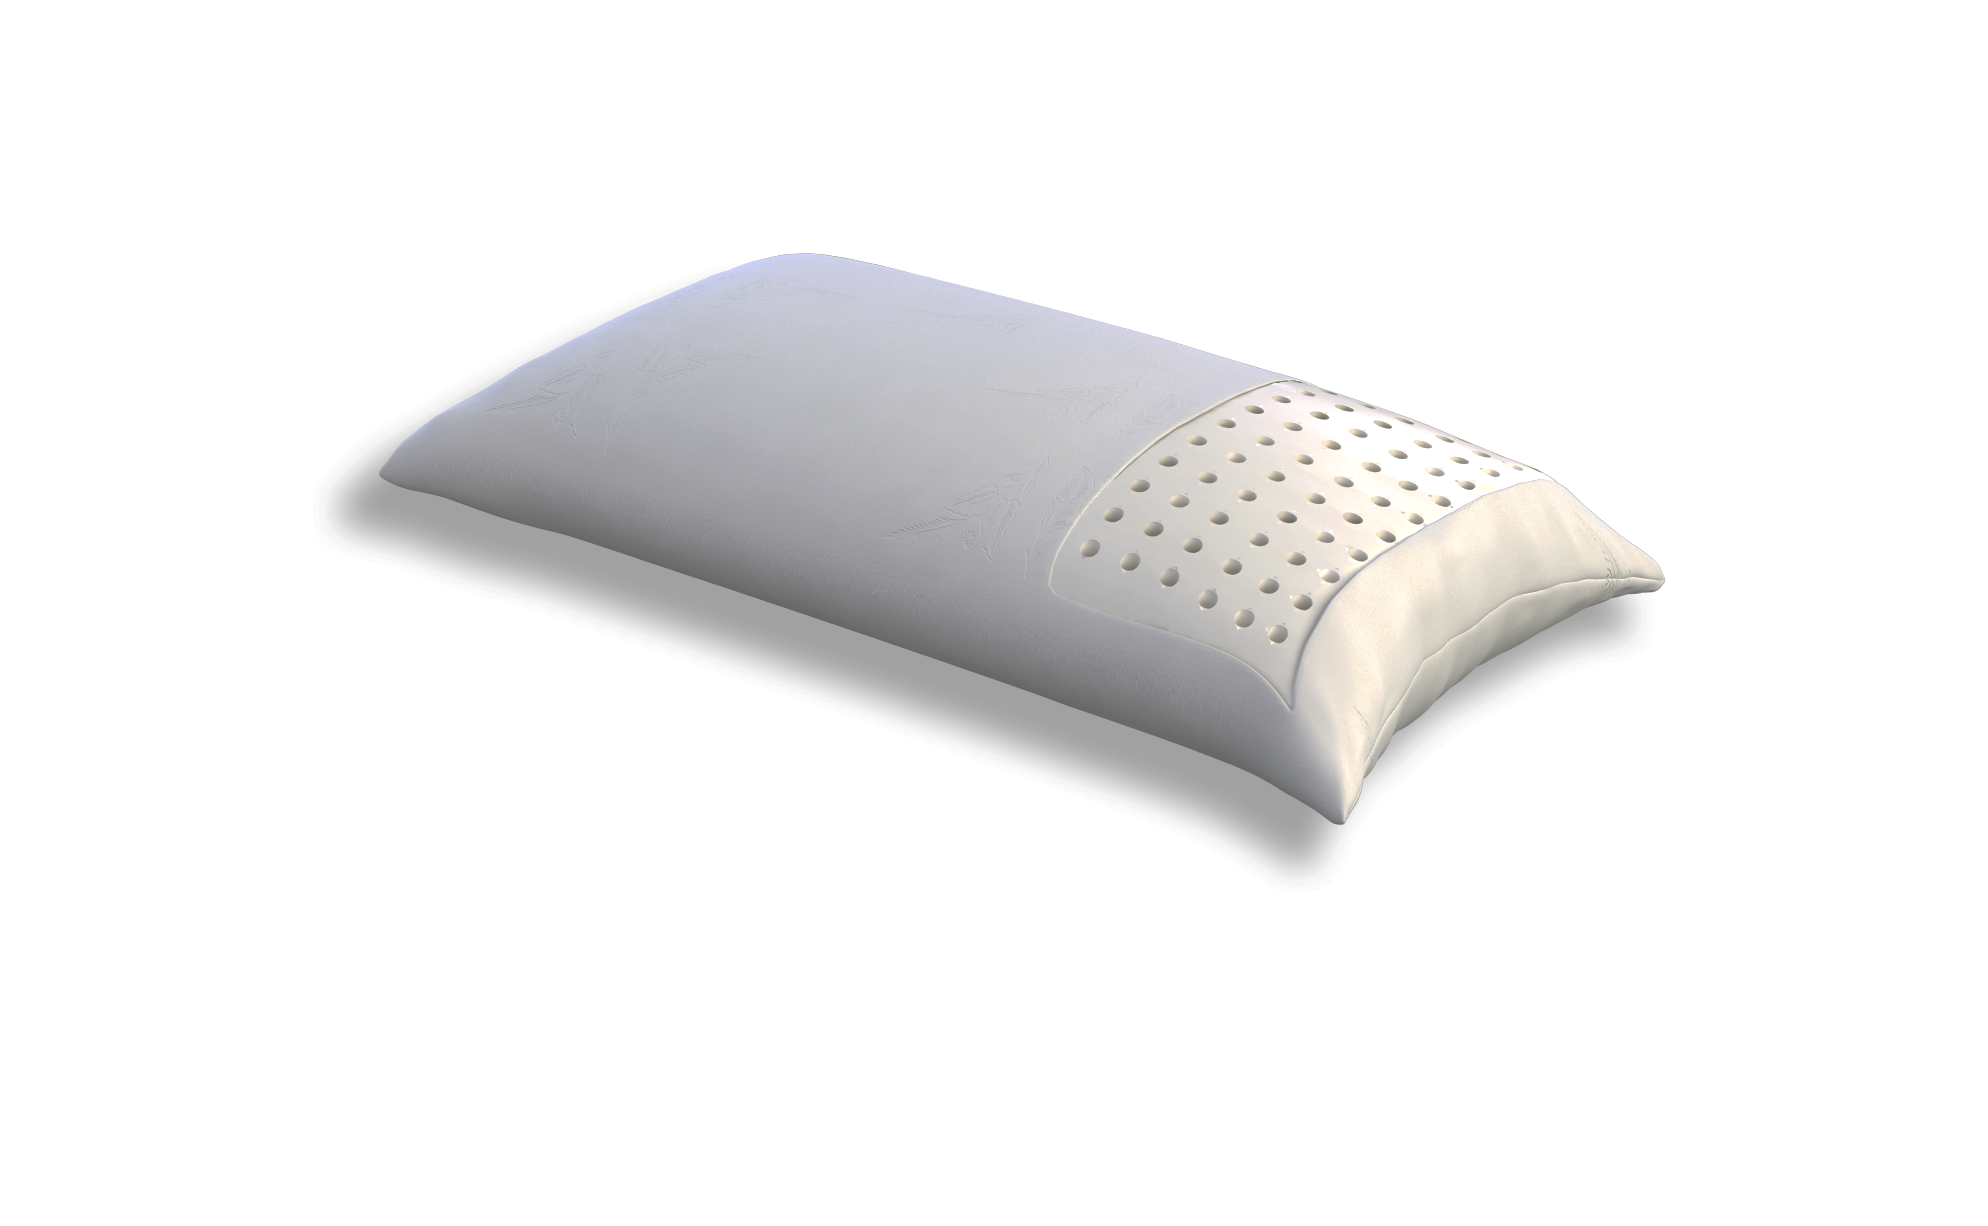 Ортопедическая подушка для сна купить в москве. Подушка Promtex-Orient Middle. Подушка Промтекс-Ориент lates. Подушка Promtex-Orient Soft 1.2. Подушка Promtex Soft.